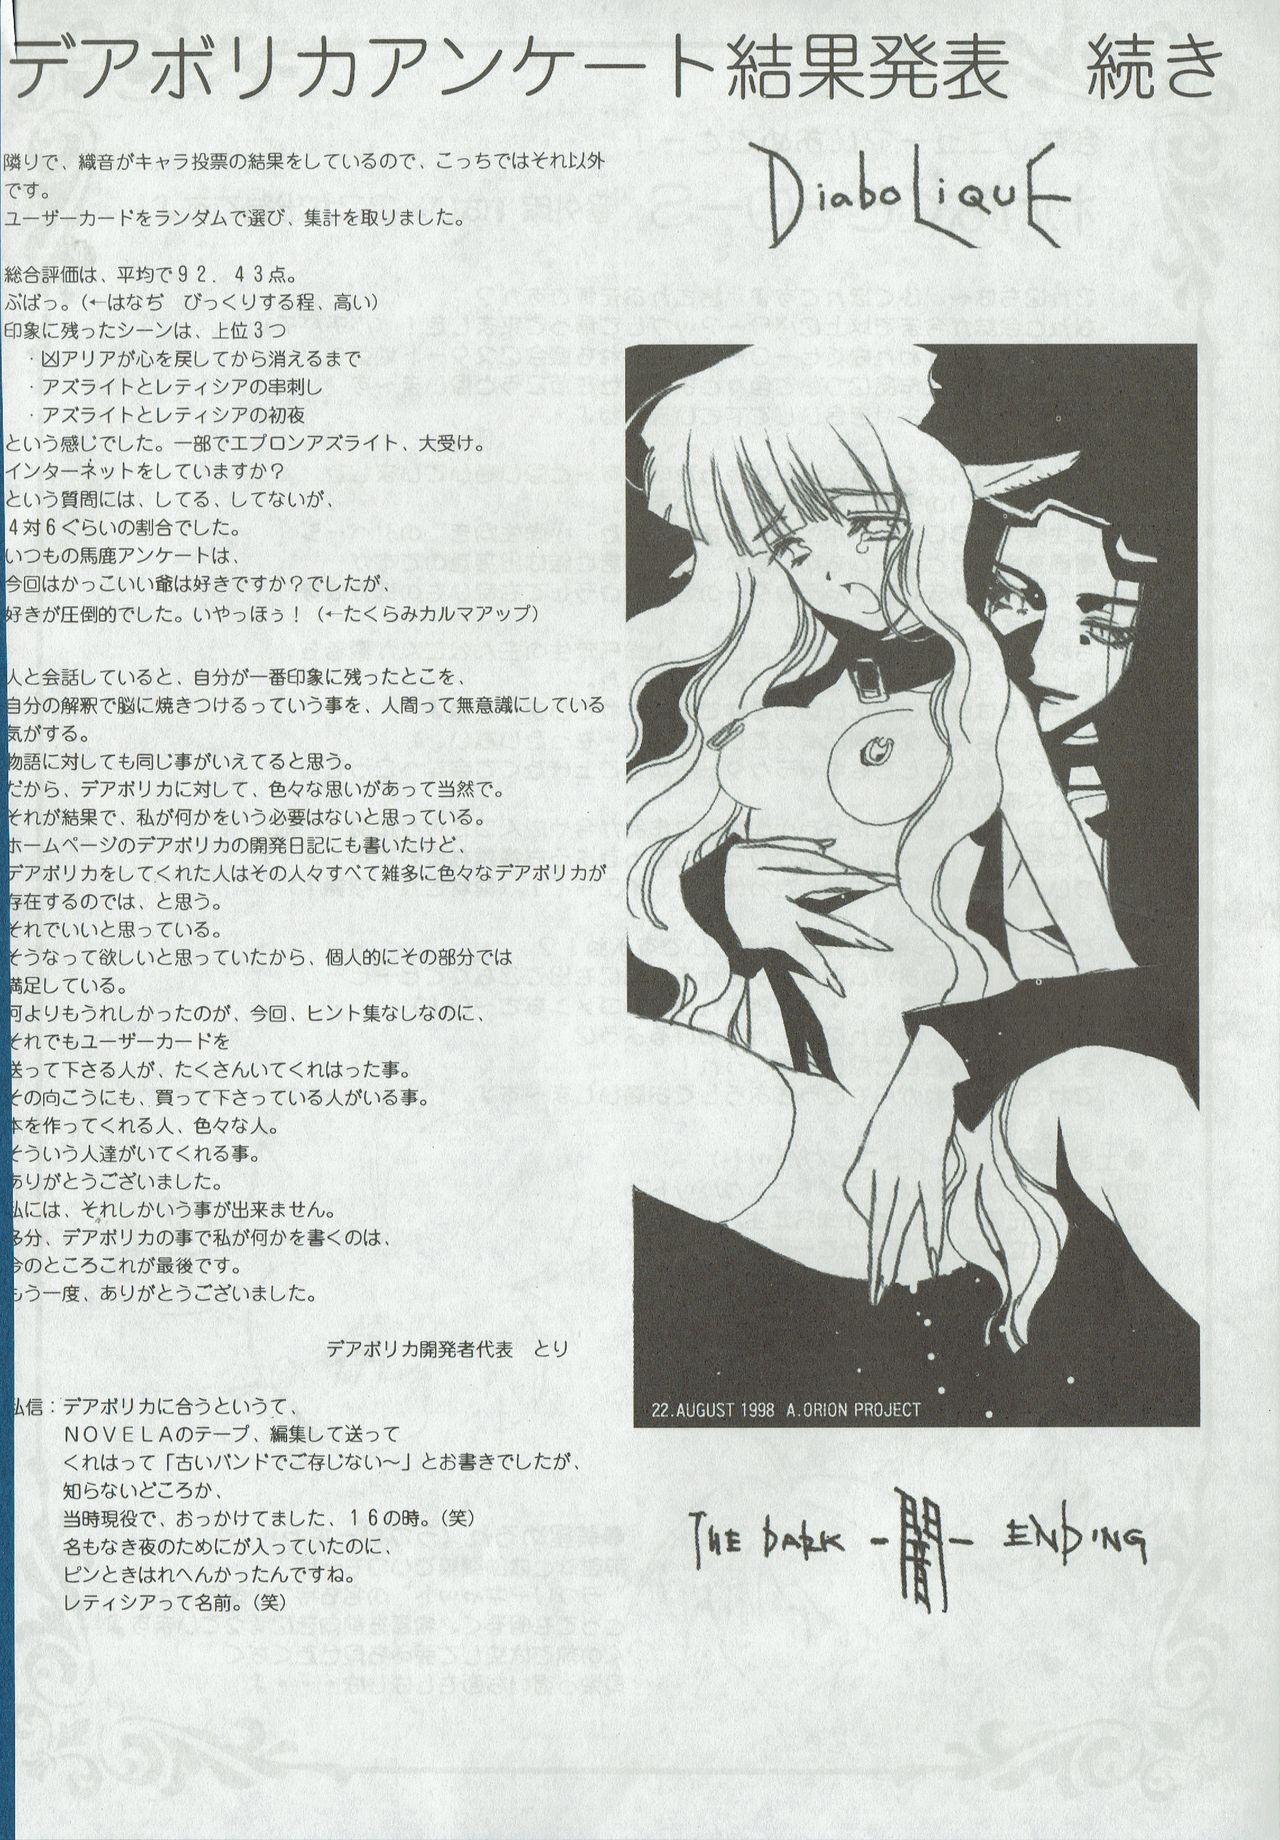 Arisu no Denchi Bakudan Vol. 01 6